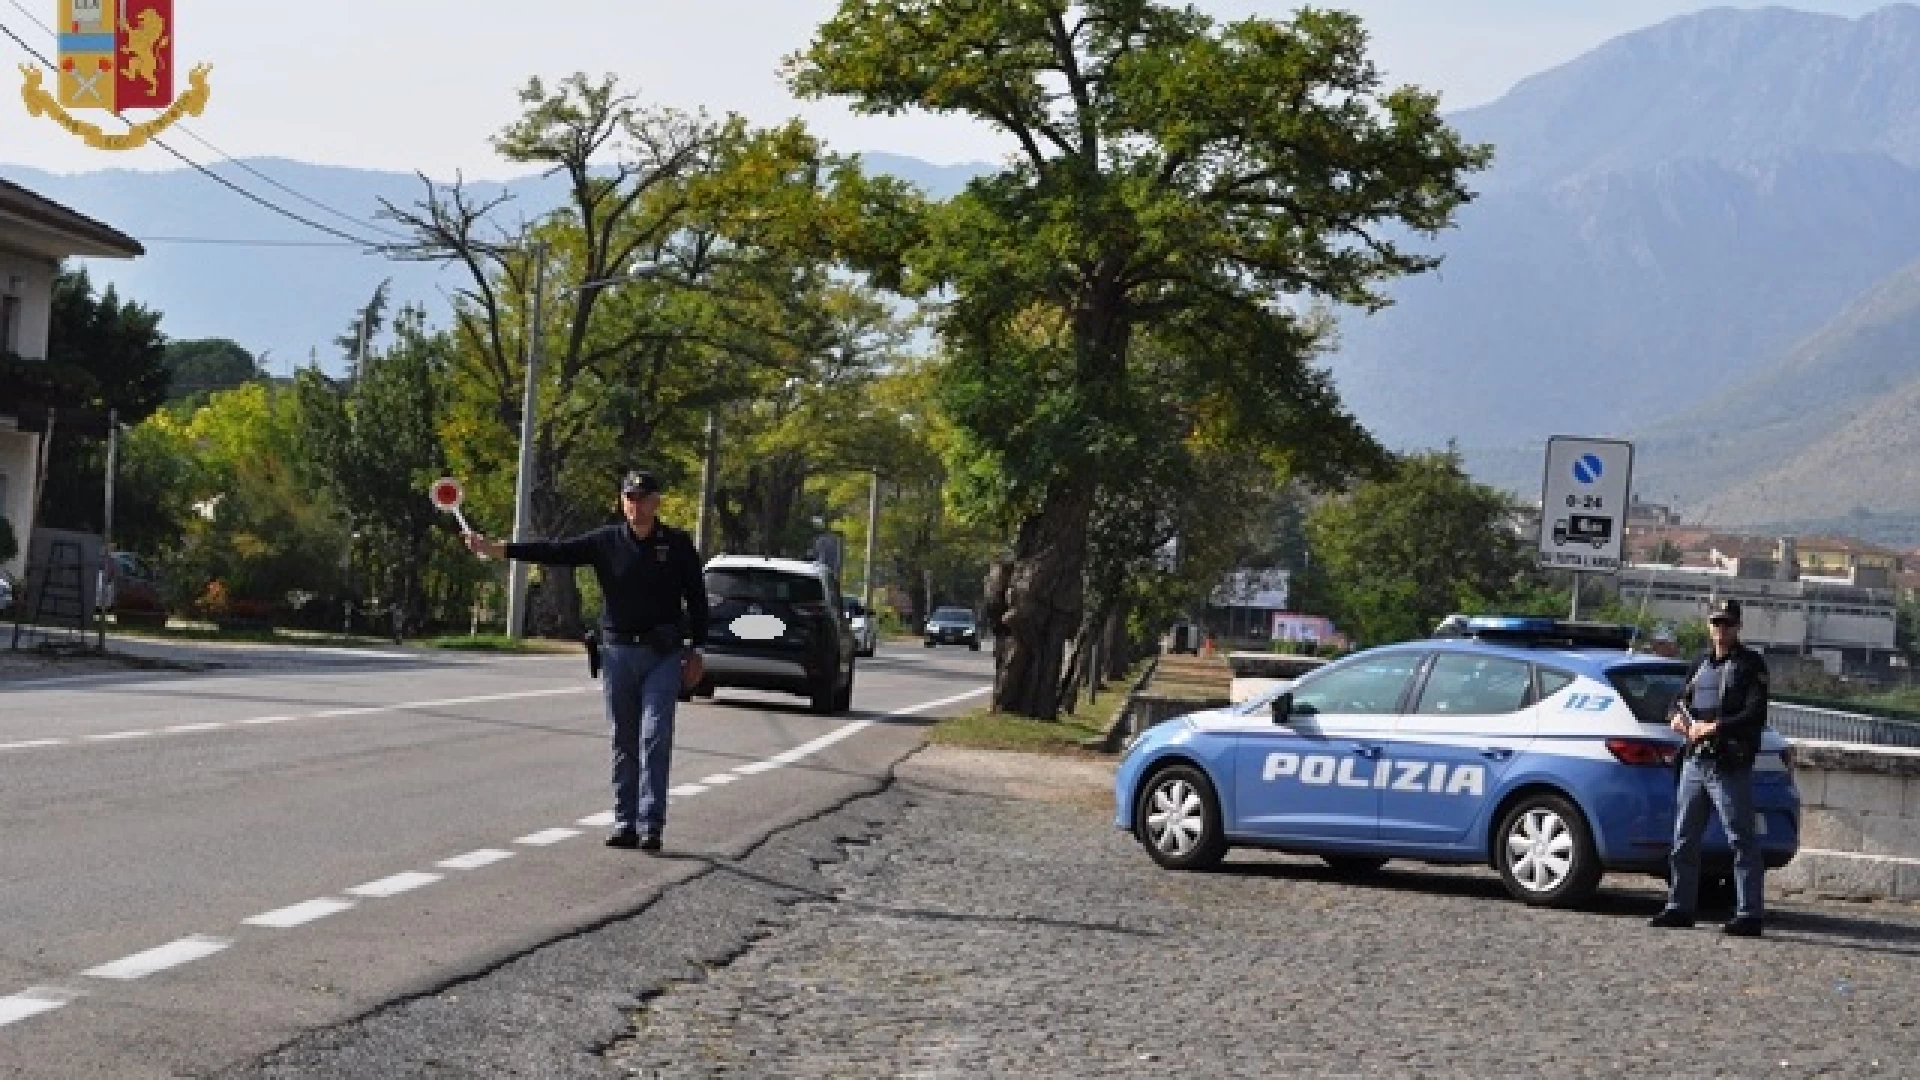 Polizia di Stato - Isernia: “ponte lungo” – viaggiare sicuri. Intensificati i controlli nei centri urbani e sulle strade.